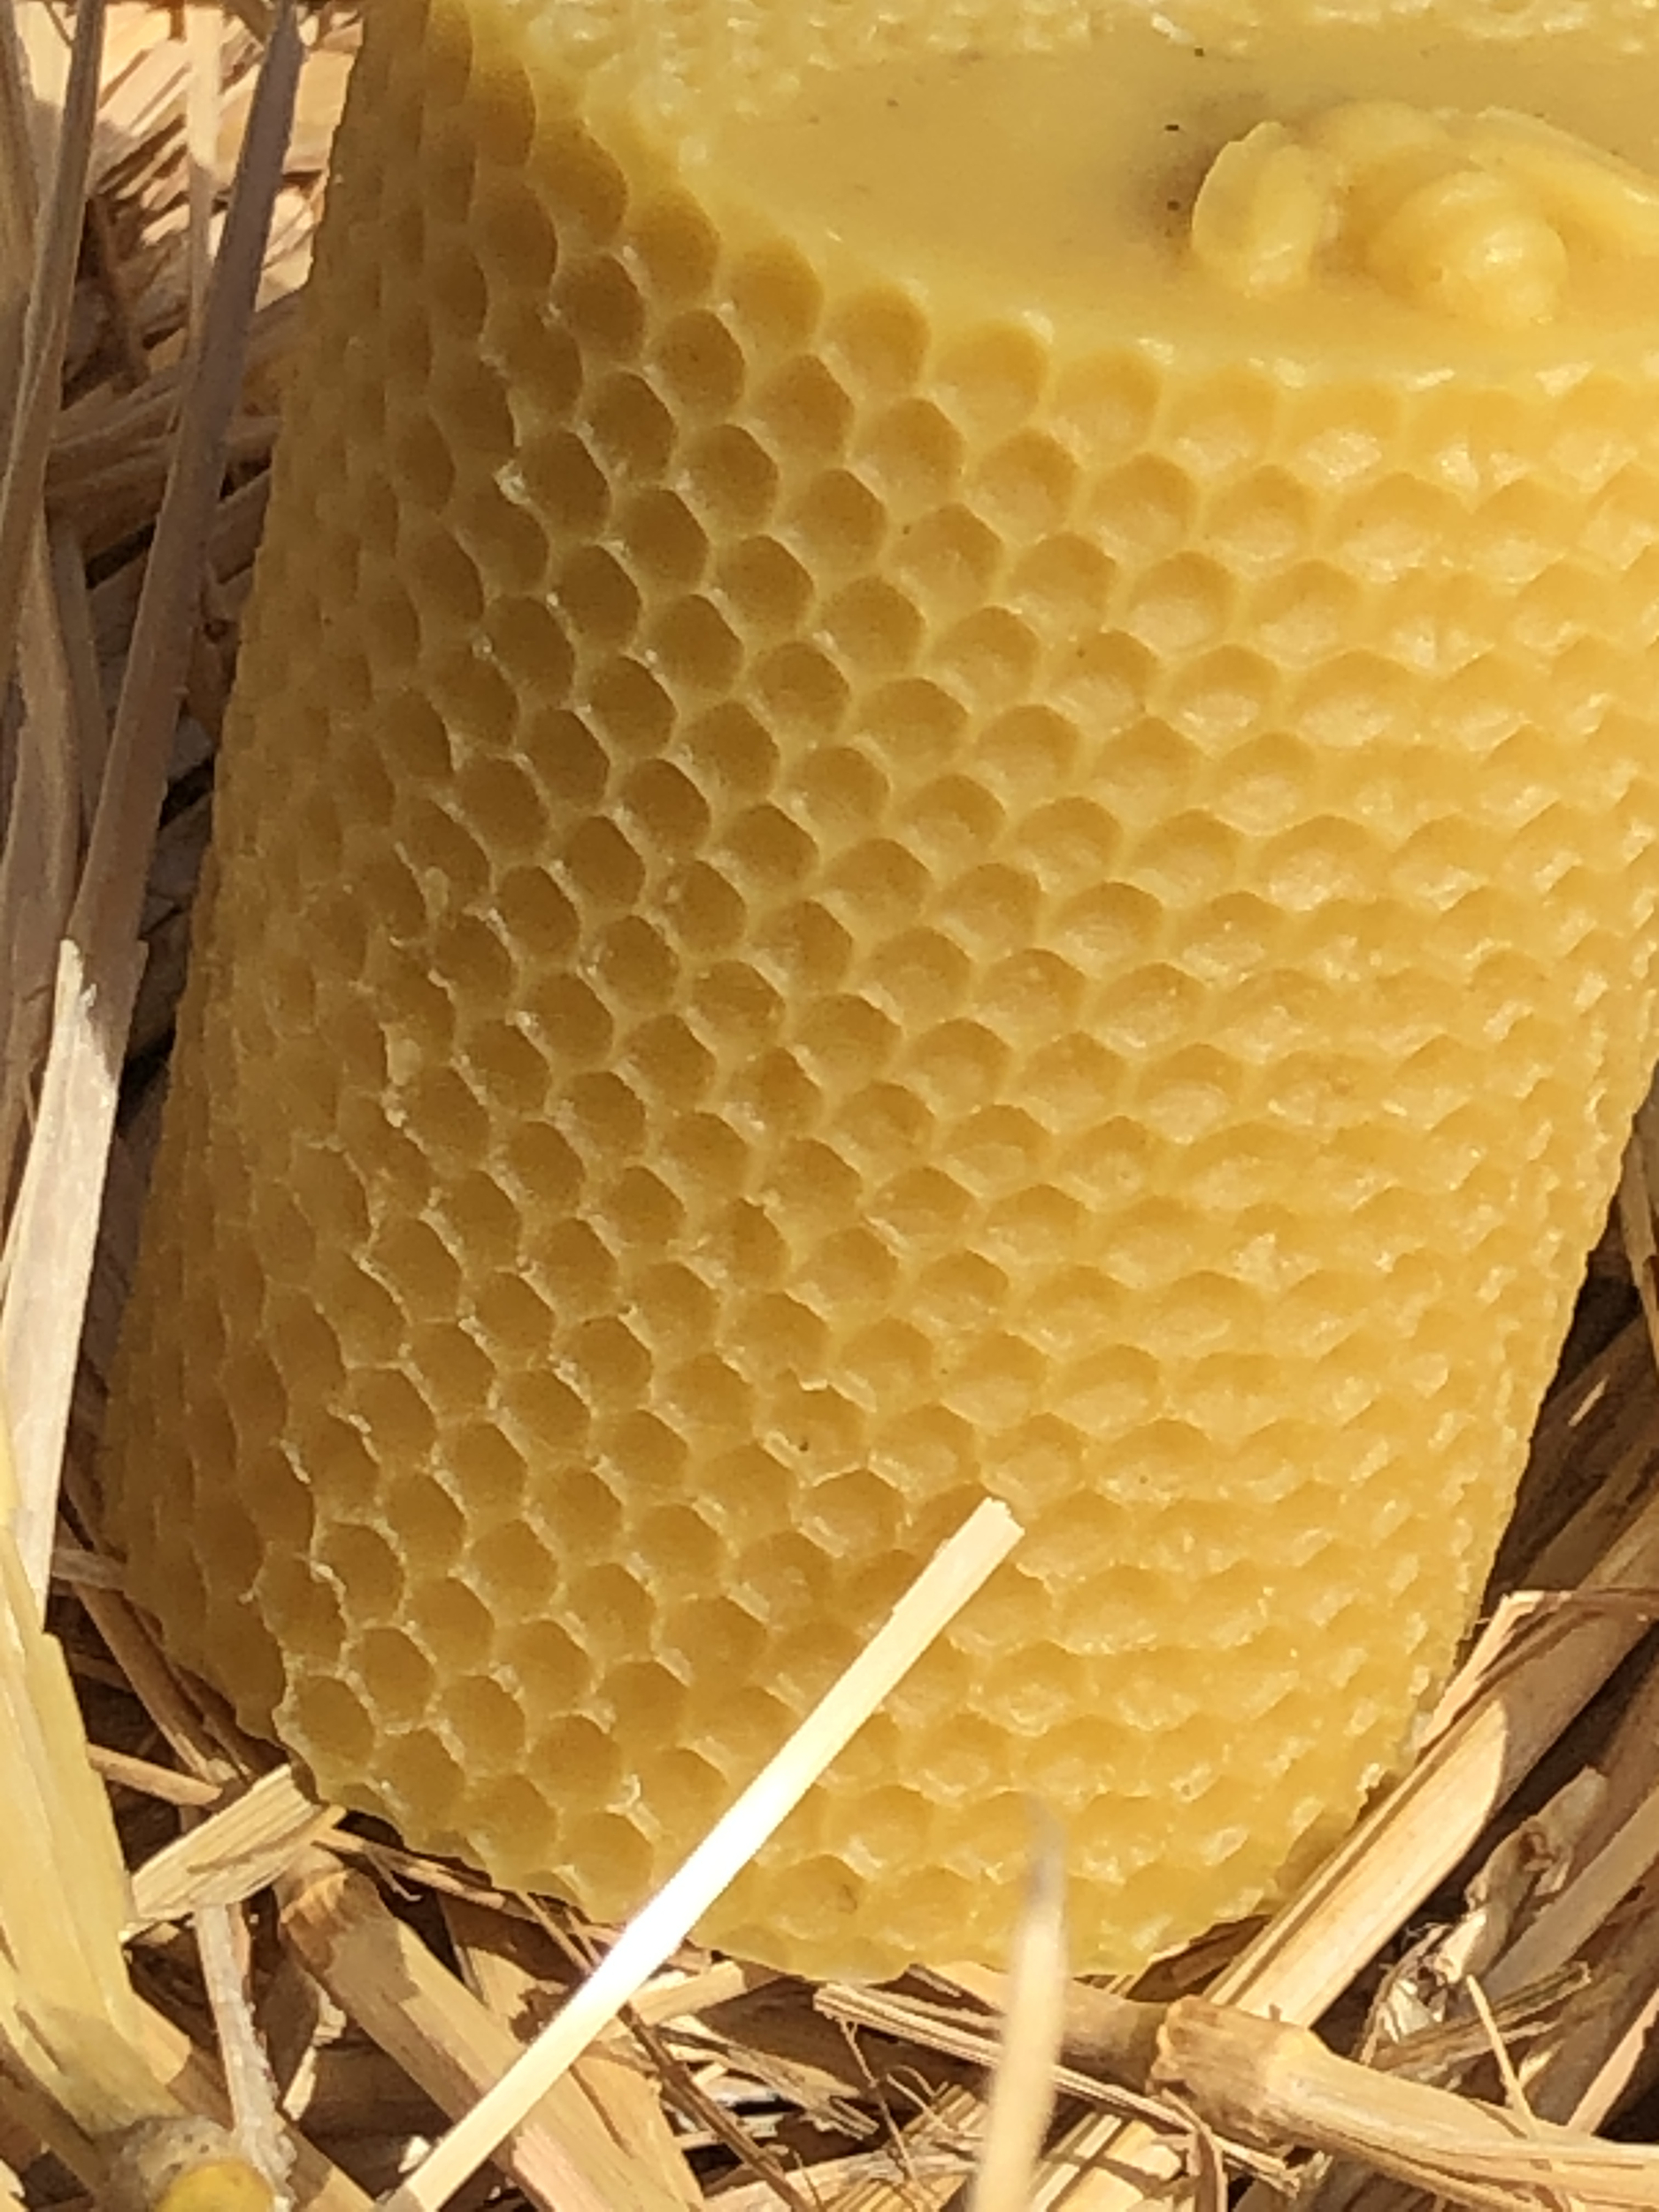 Les bougies en cire d'abeille : origine, fabrication, avantages